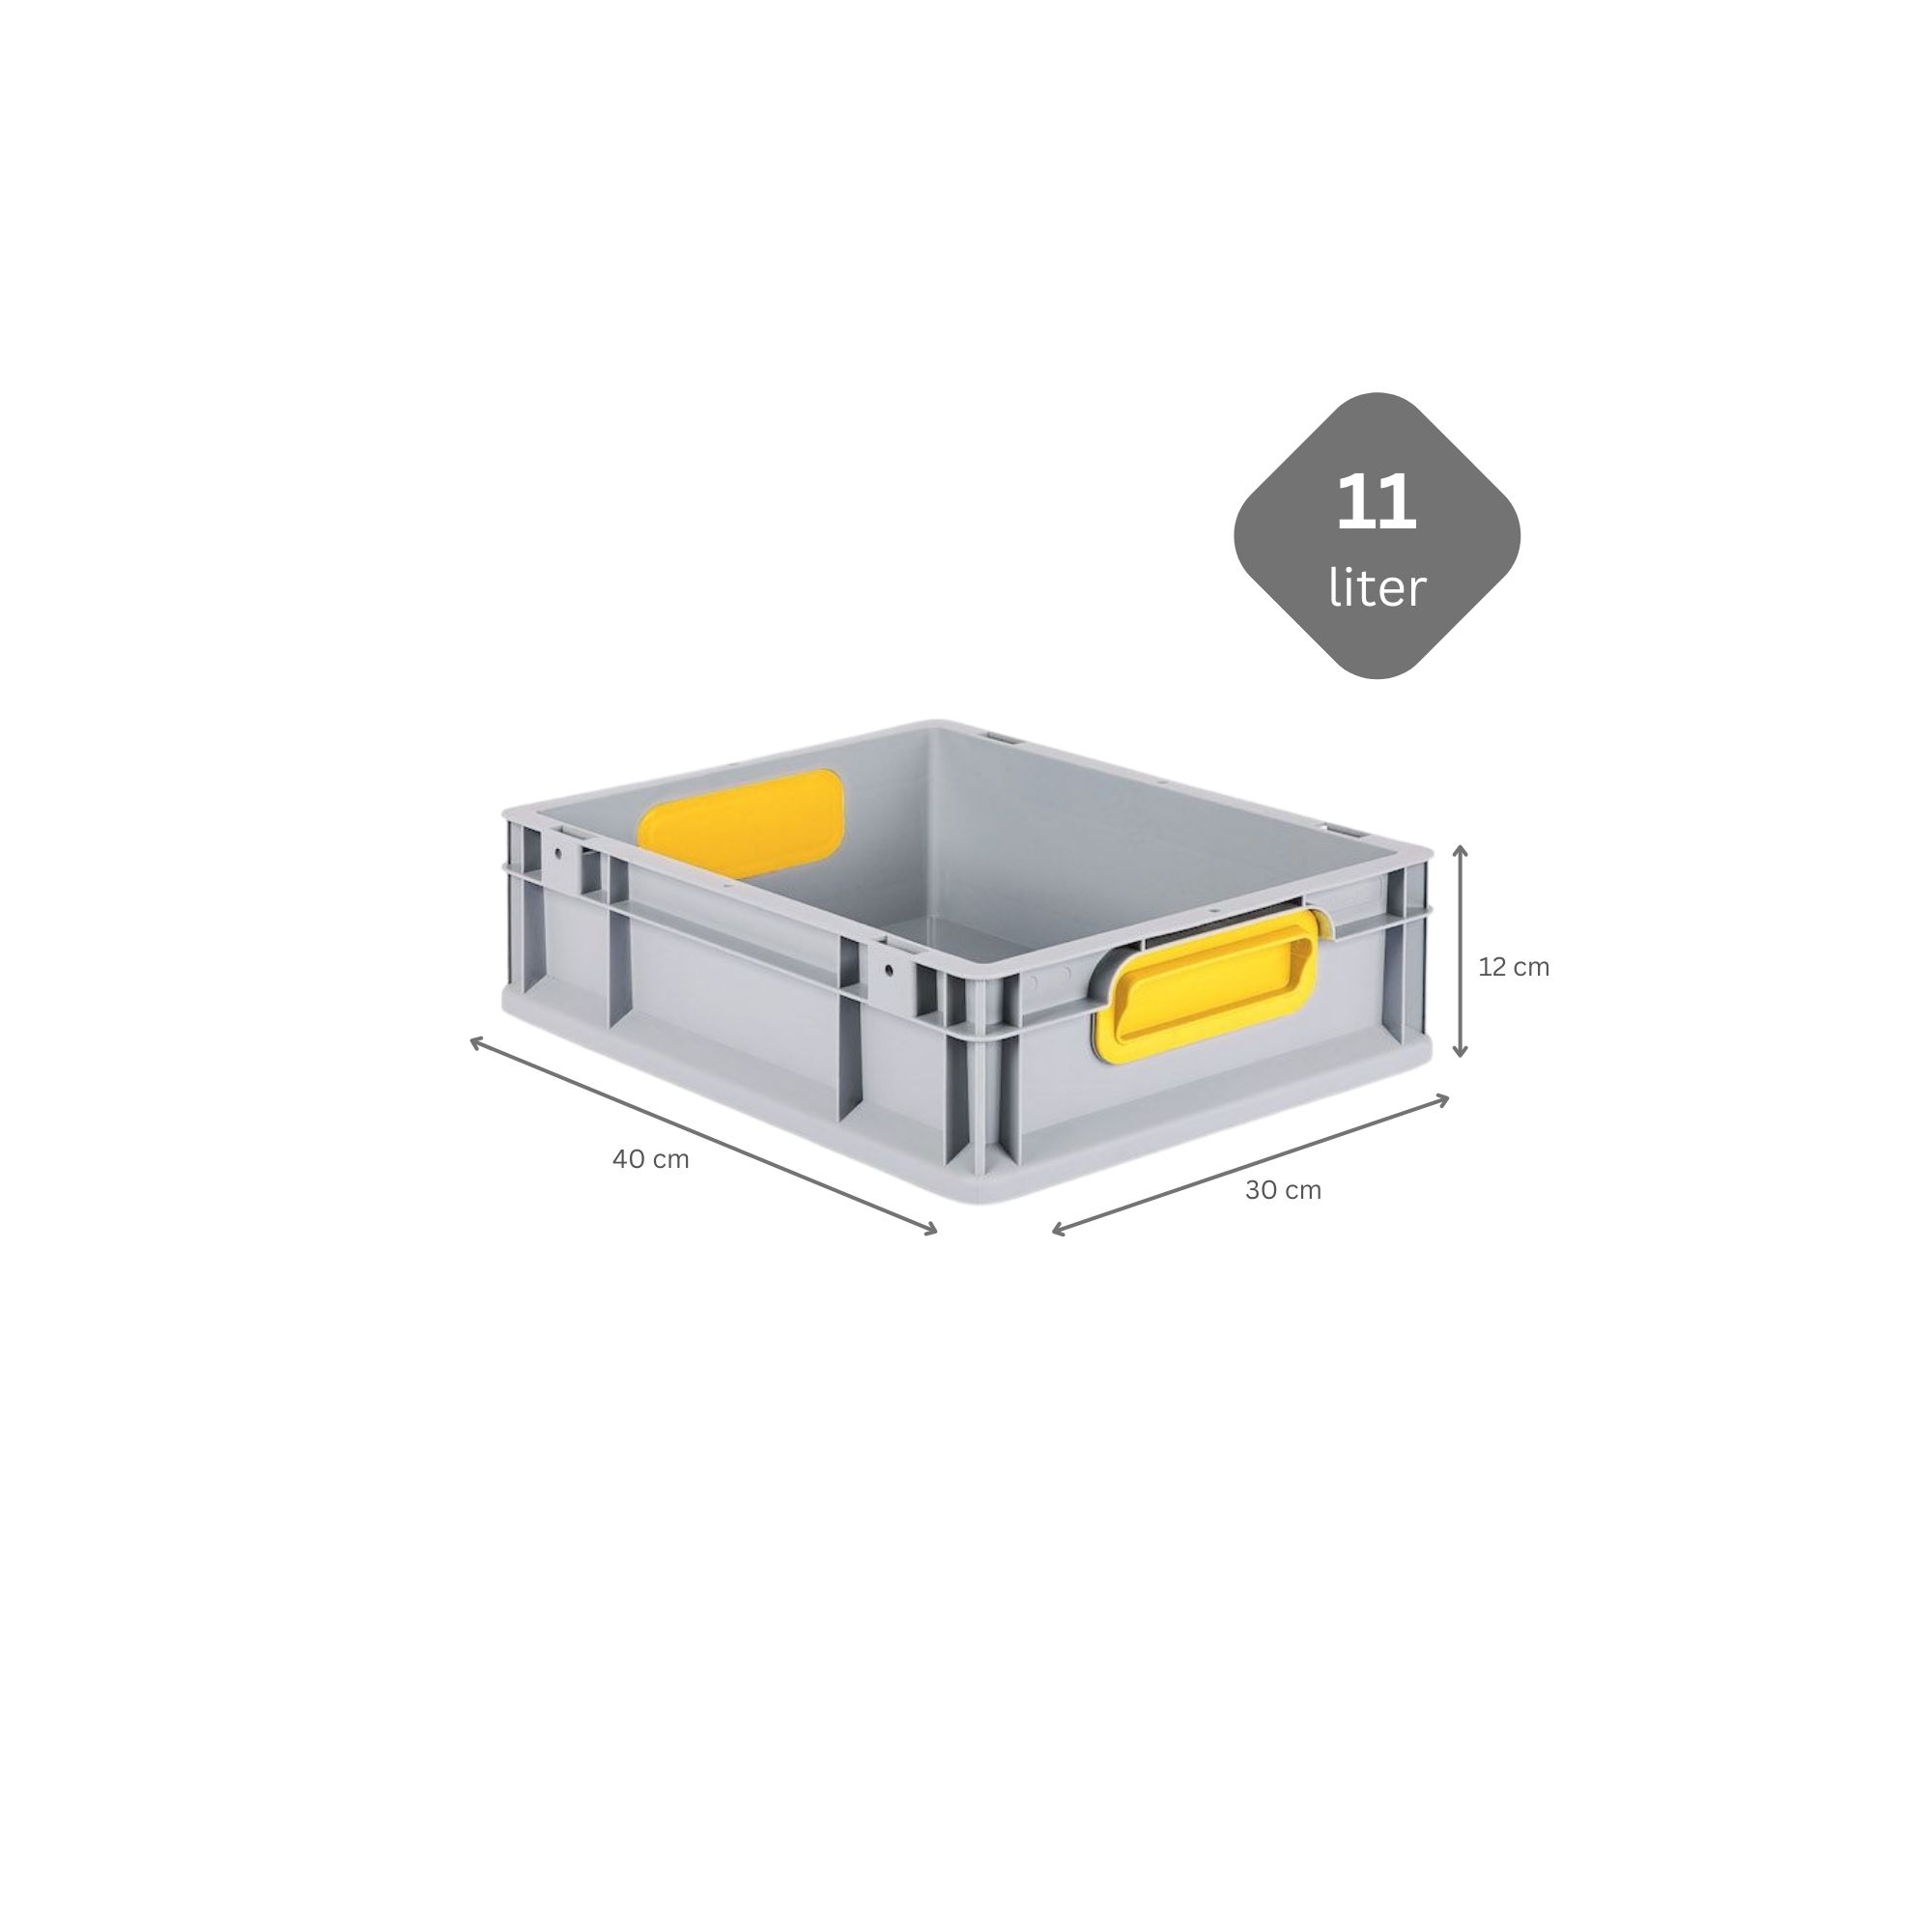 SparSet 5x Eurobox NextGen Color mit Auflagedeckel und Schiebeschnappverschlüsse | HxBxT 12x30x40cm | 11 Liter | Griffe gelb geschlossen | Glatter Boden | Eurobehälter, Transportbox, Transportbehälter, Stapelbehälter